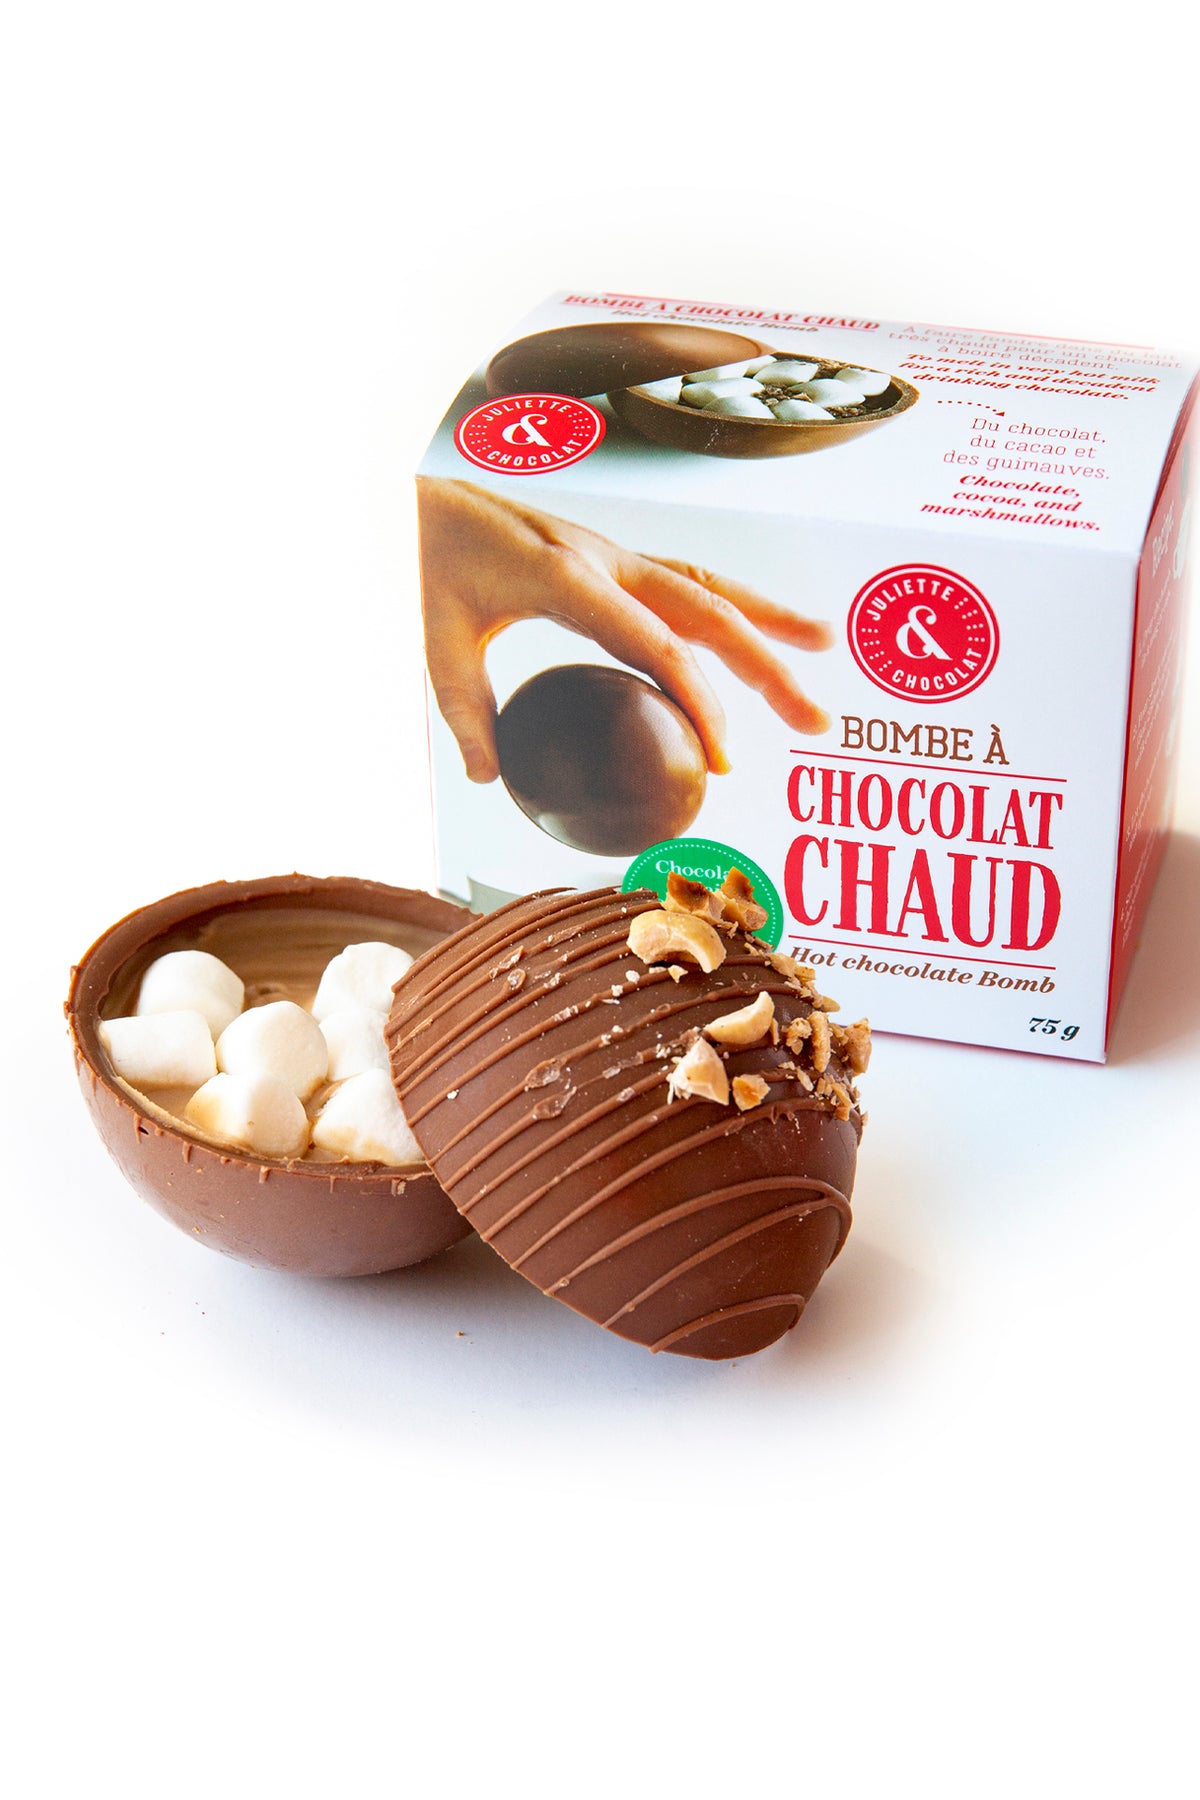 Vente en ligne de coffret de chocolat artisanal en Belgique